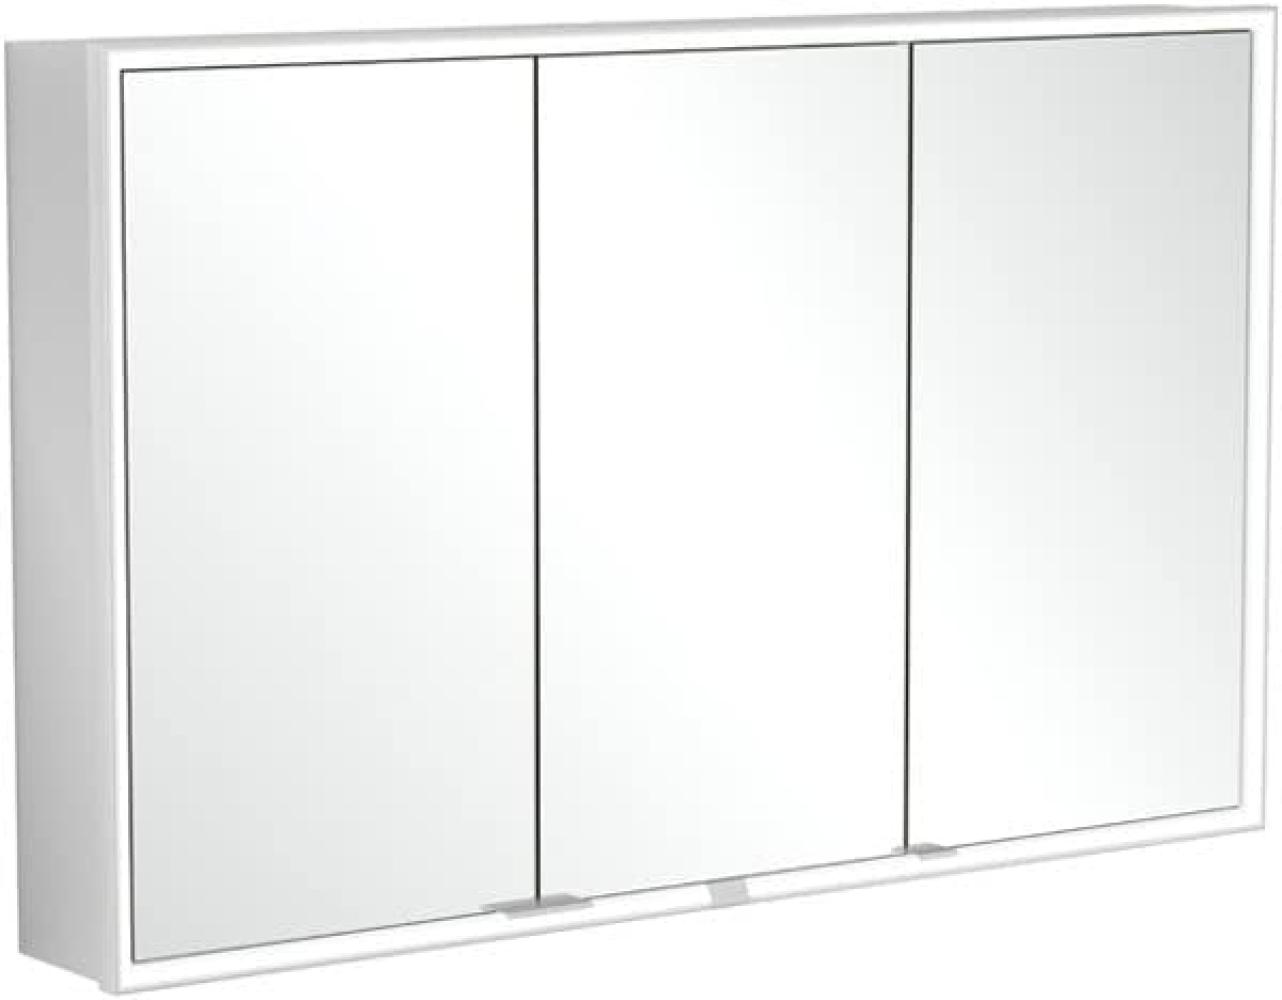 Villeroy & Boch My View Now, Spiegelschrank für Wandeinbau mit Beleuchtung, 1200x750x167,5 mm, mit Sensordimmer, 3 Türen, A45612 - A4561200 Bild 1